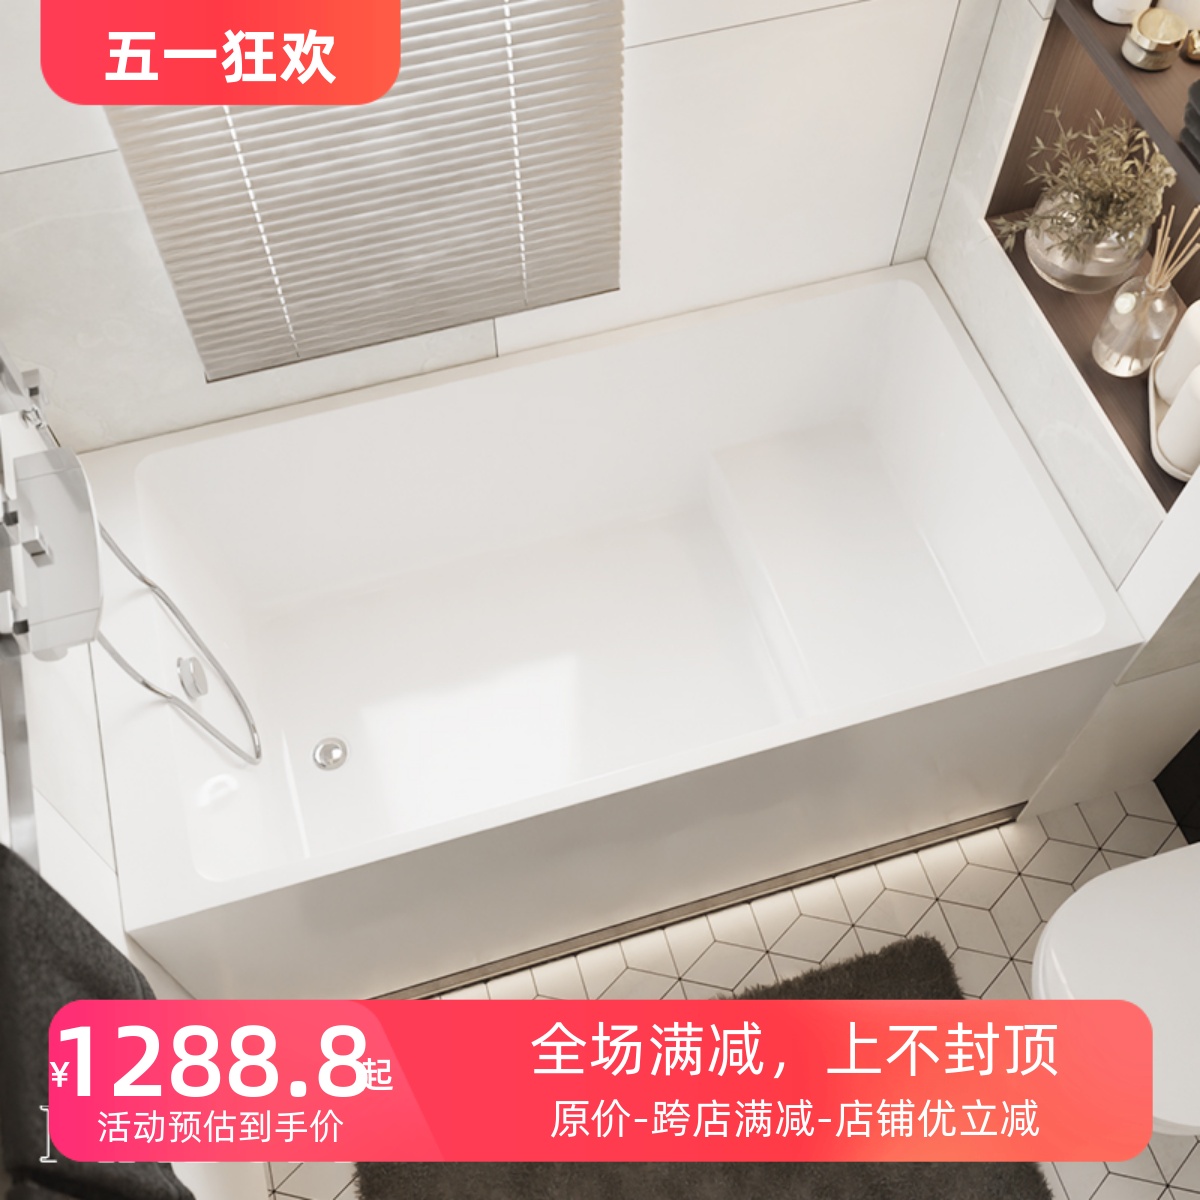 魅生卫浴亚克力迷你日式浴缸 坐泡式简约家用小户型浴盆0.95m-1.7